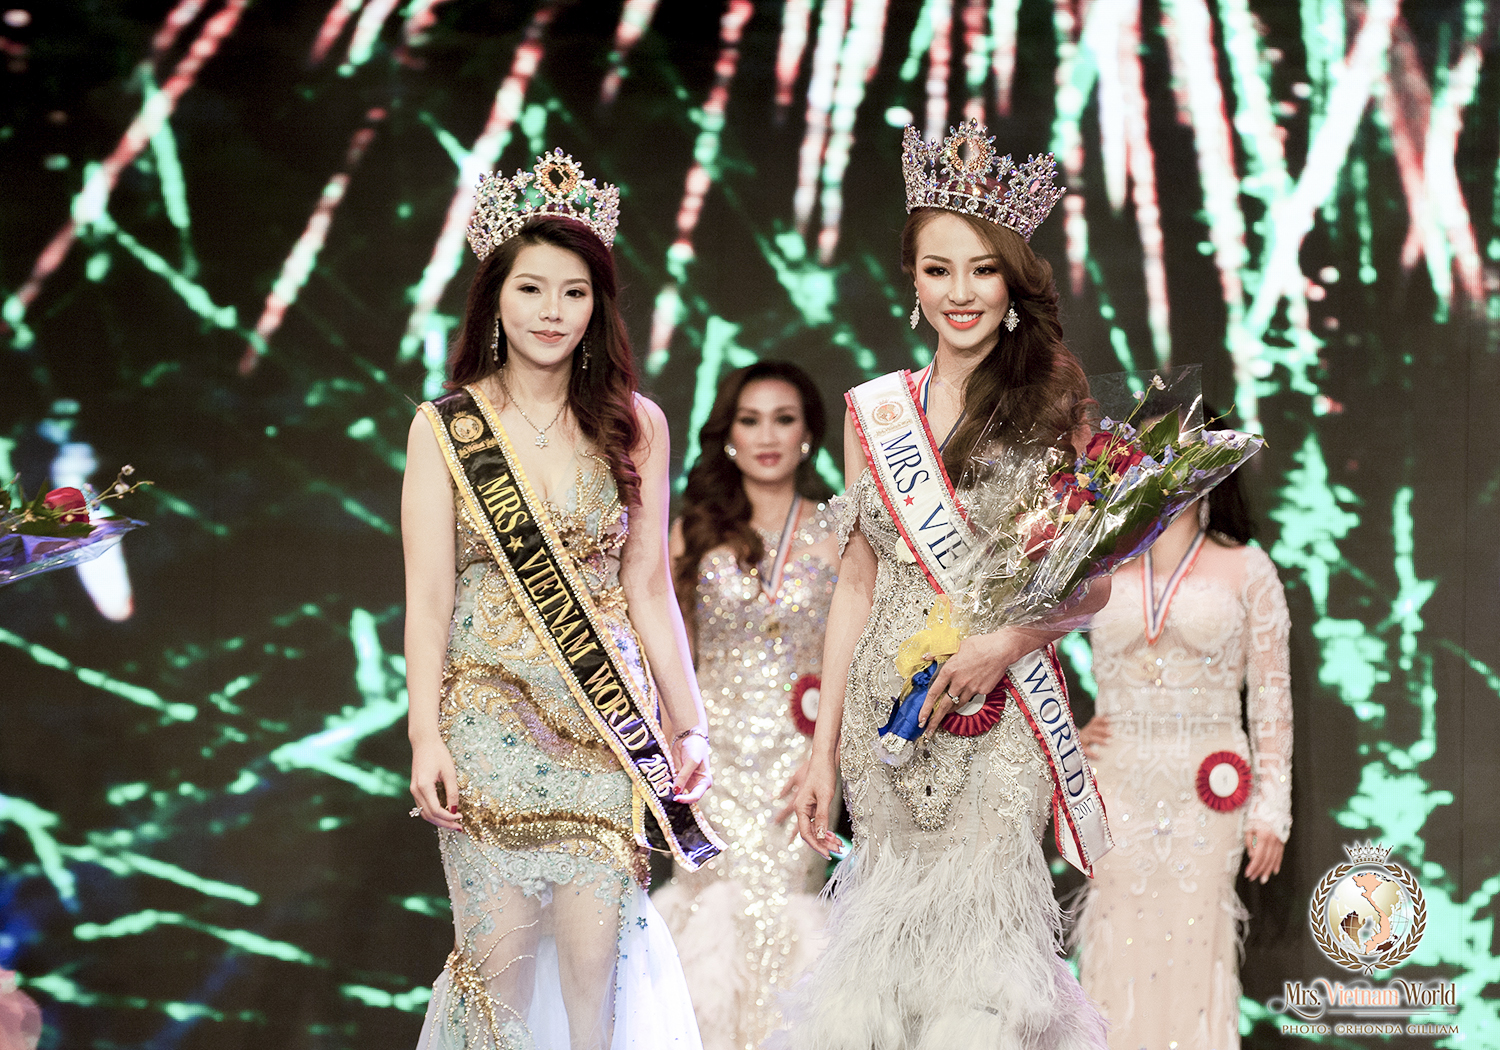 Vì sao Hoa hậu Bảo Ngọc trả danh hiệu Mrs Viet Nam World 2017?